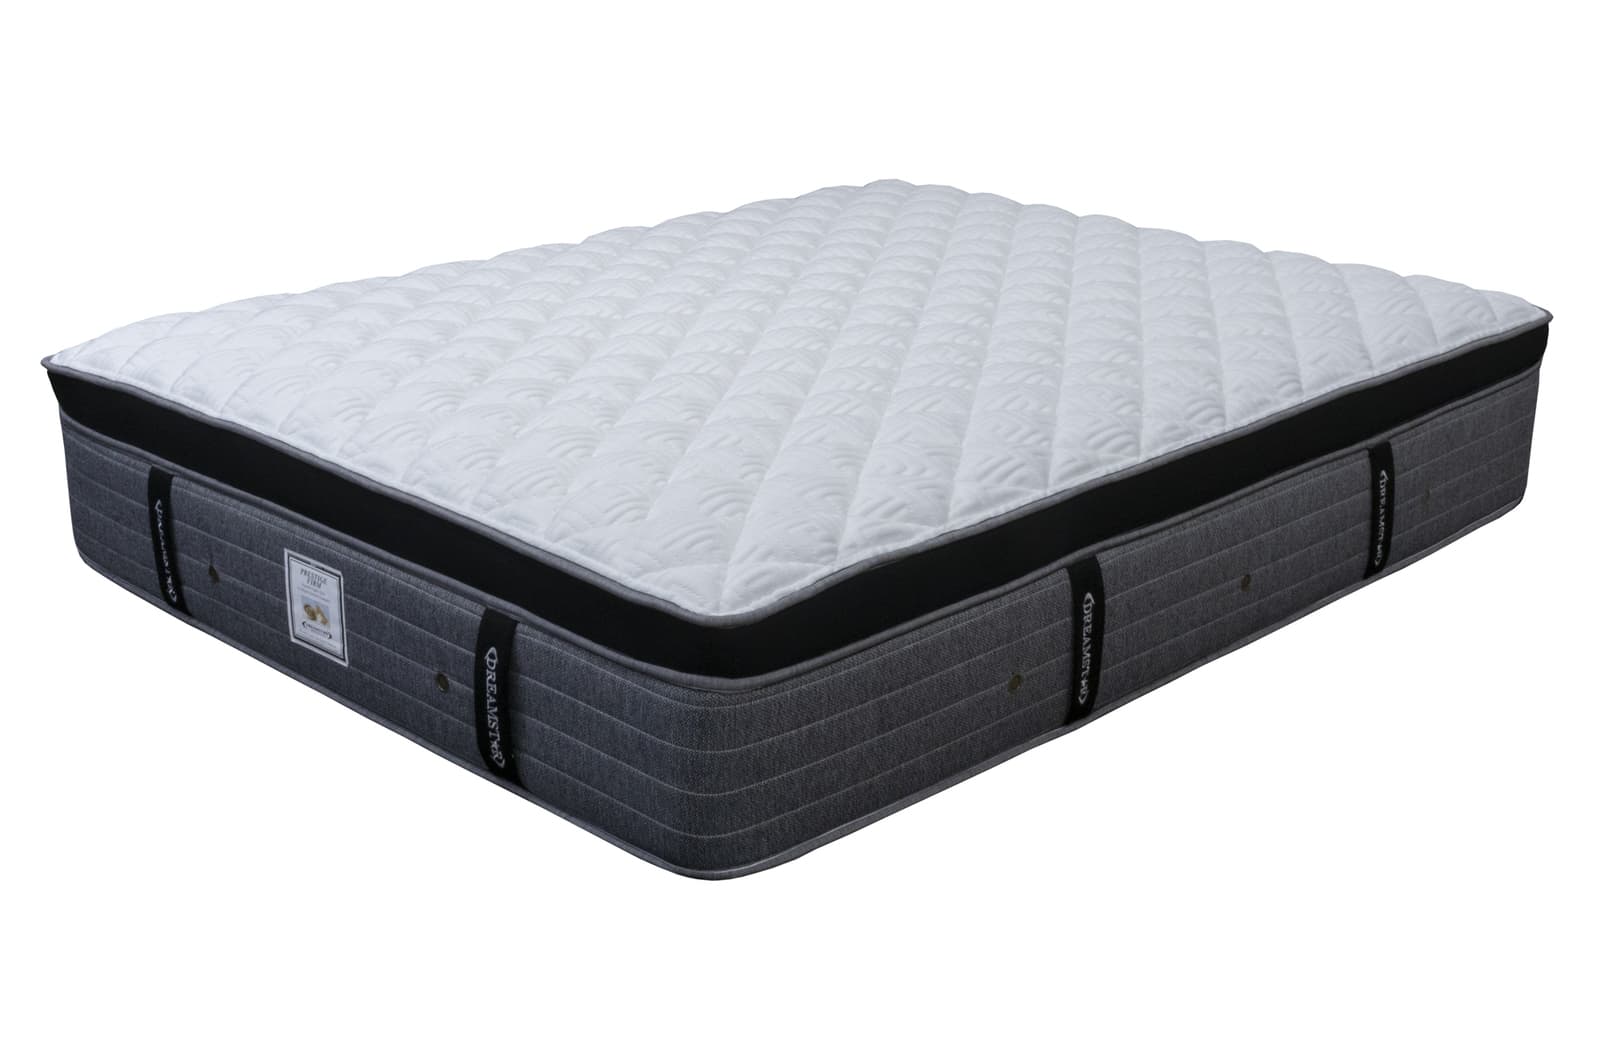 mattress for sale cindy carter